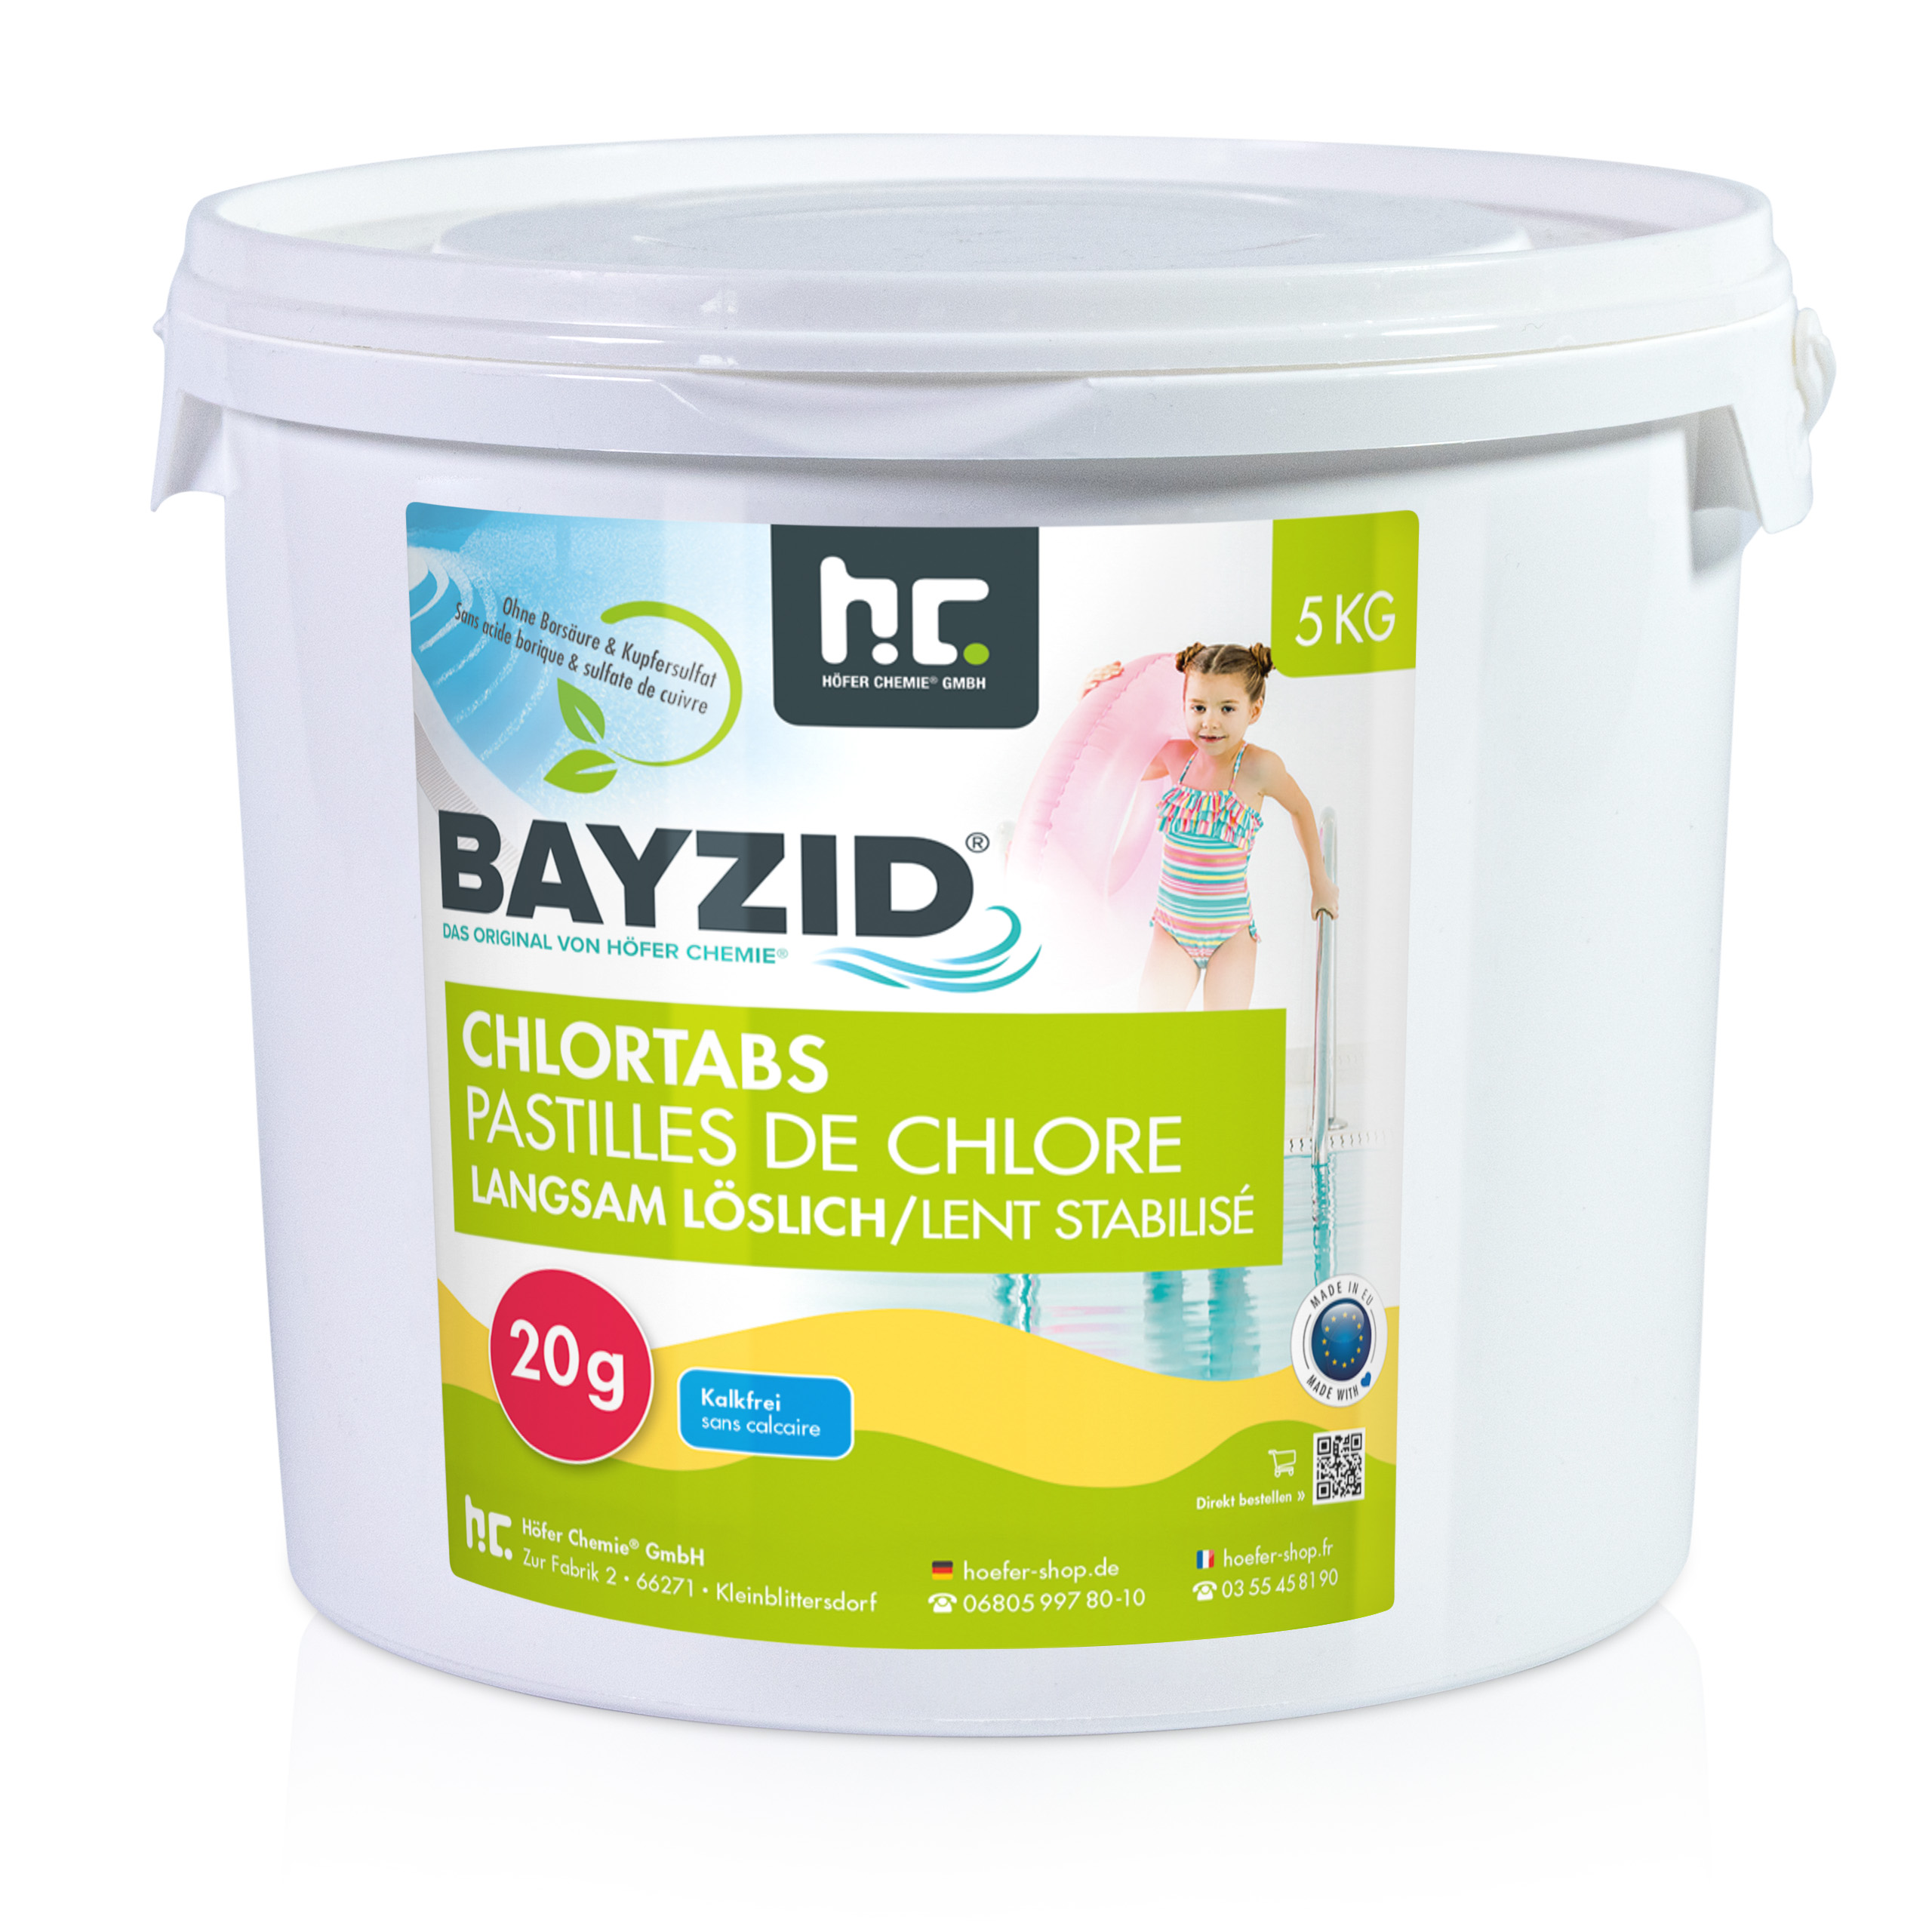 5 kg BAYZID® Chlortabs 20g langsam löslich